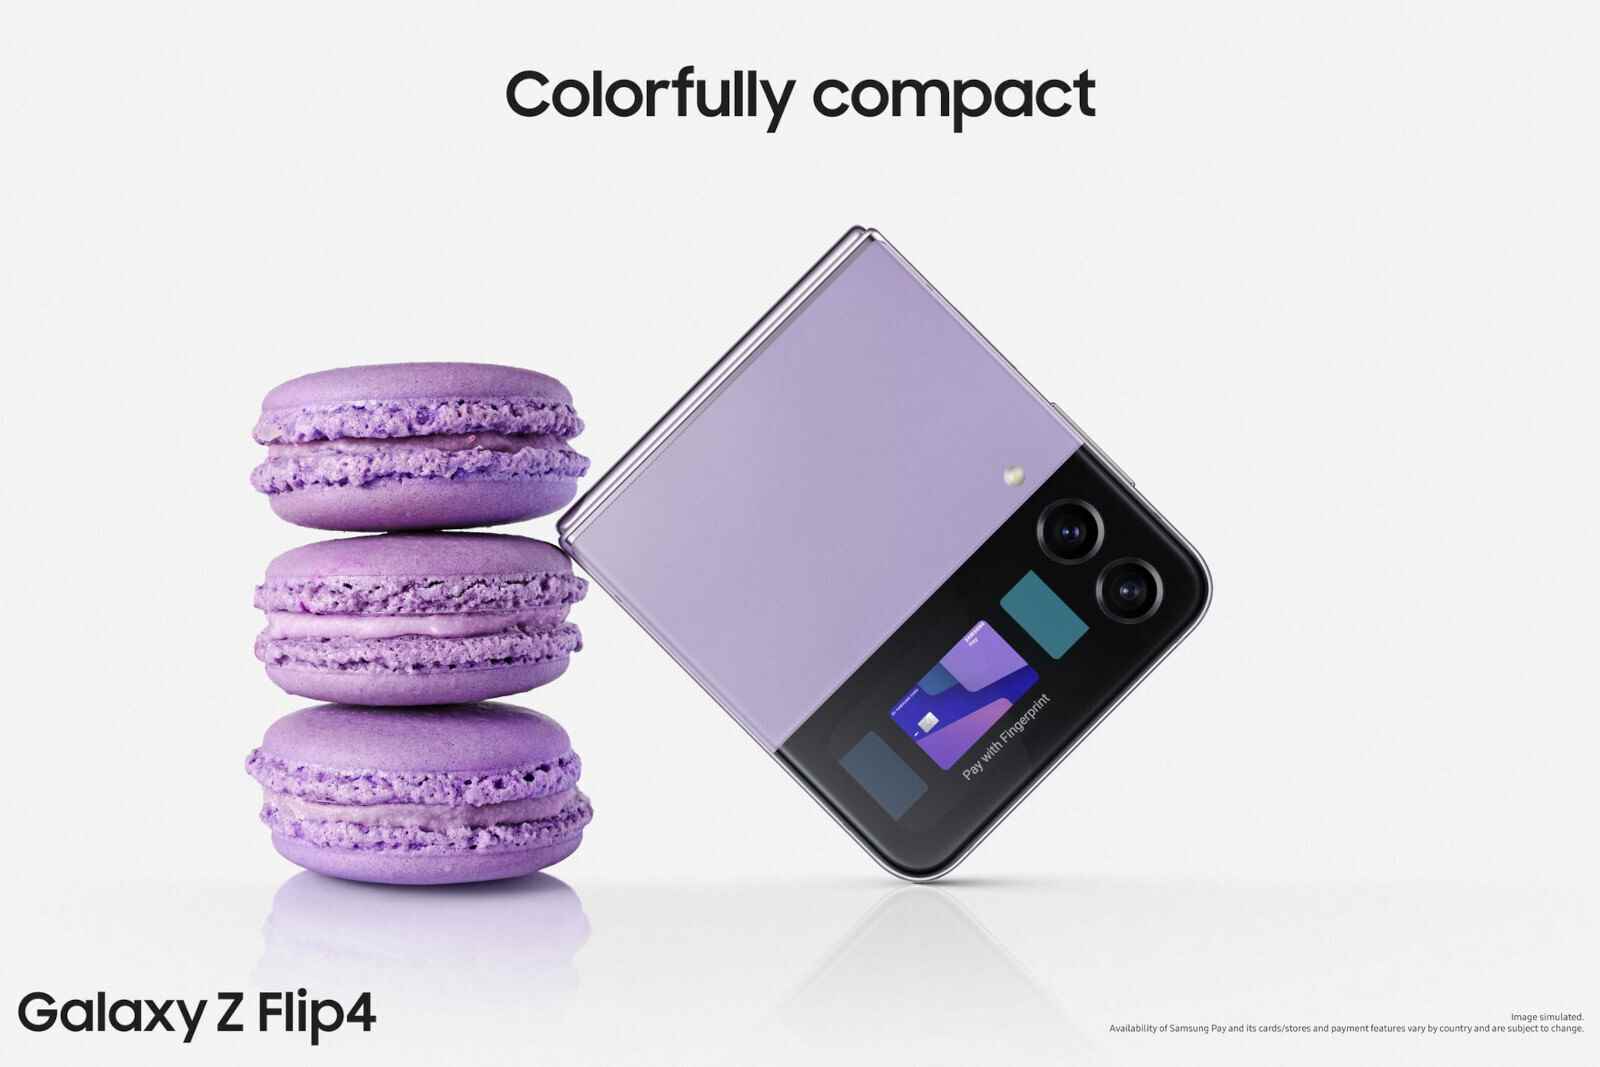 Galaxy Z Flip 4 renk: tüm resmi tonlar